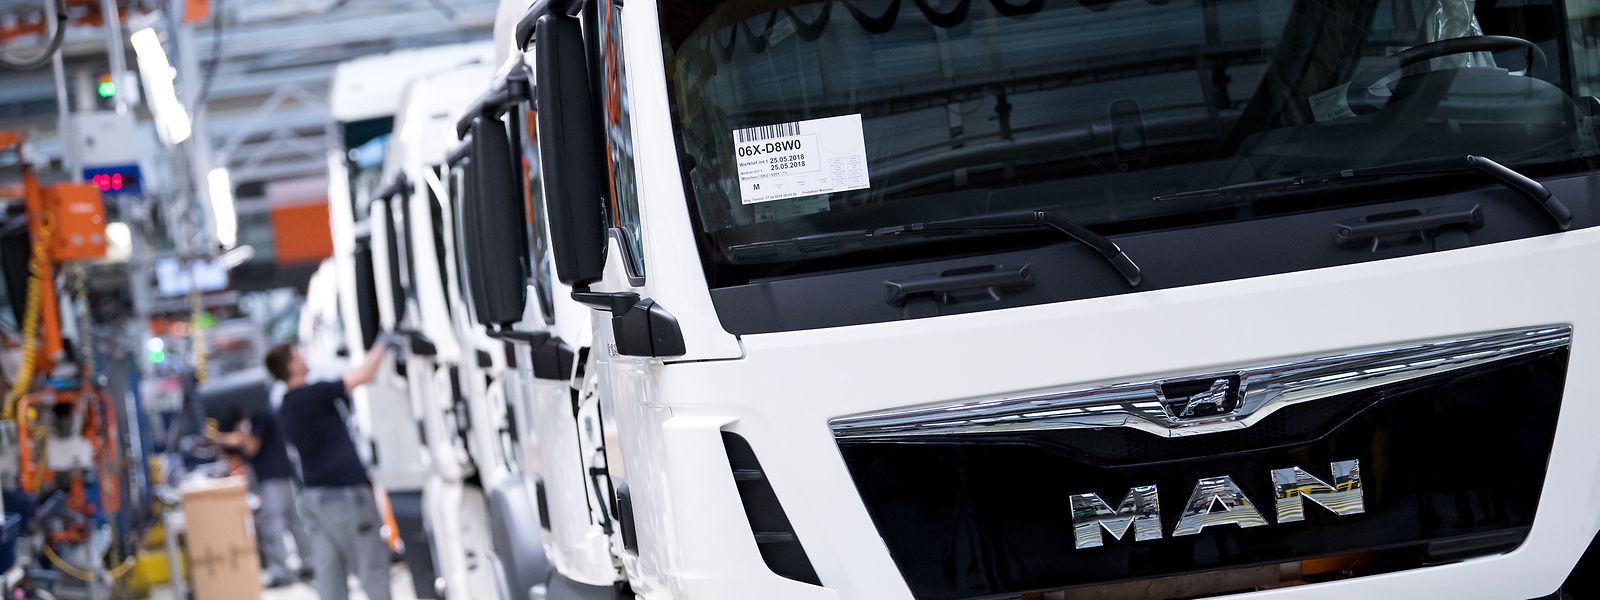 Der Lastwagenbauer MAN gehört zur VW-Lkw-Tochter Traton. Bald wird auch Navistar zu Traton gehören.